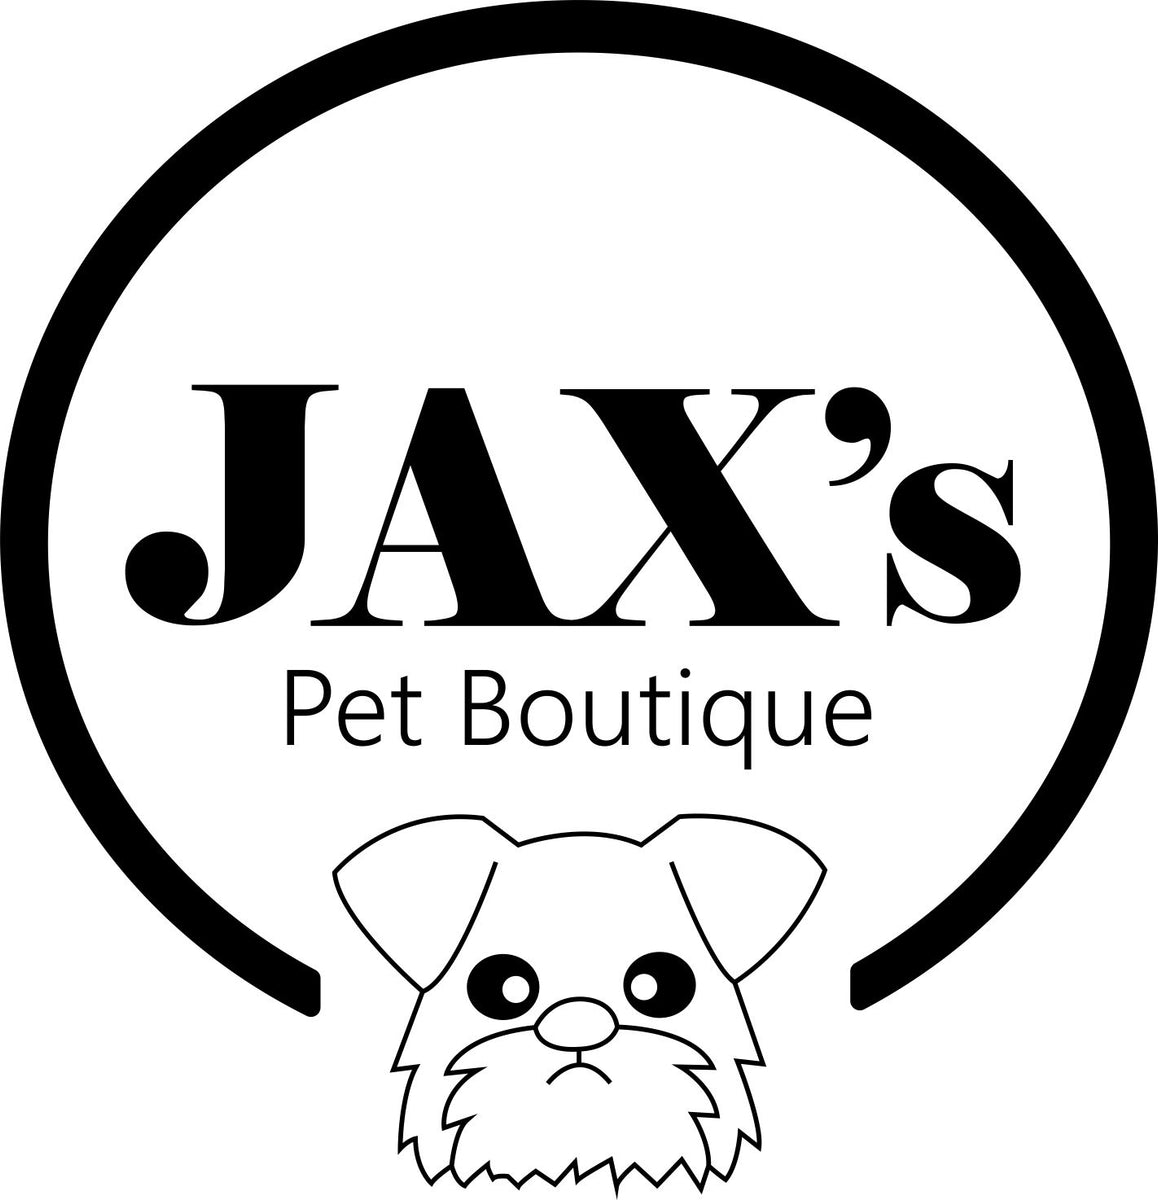 Jax's Pet Boutique